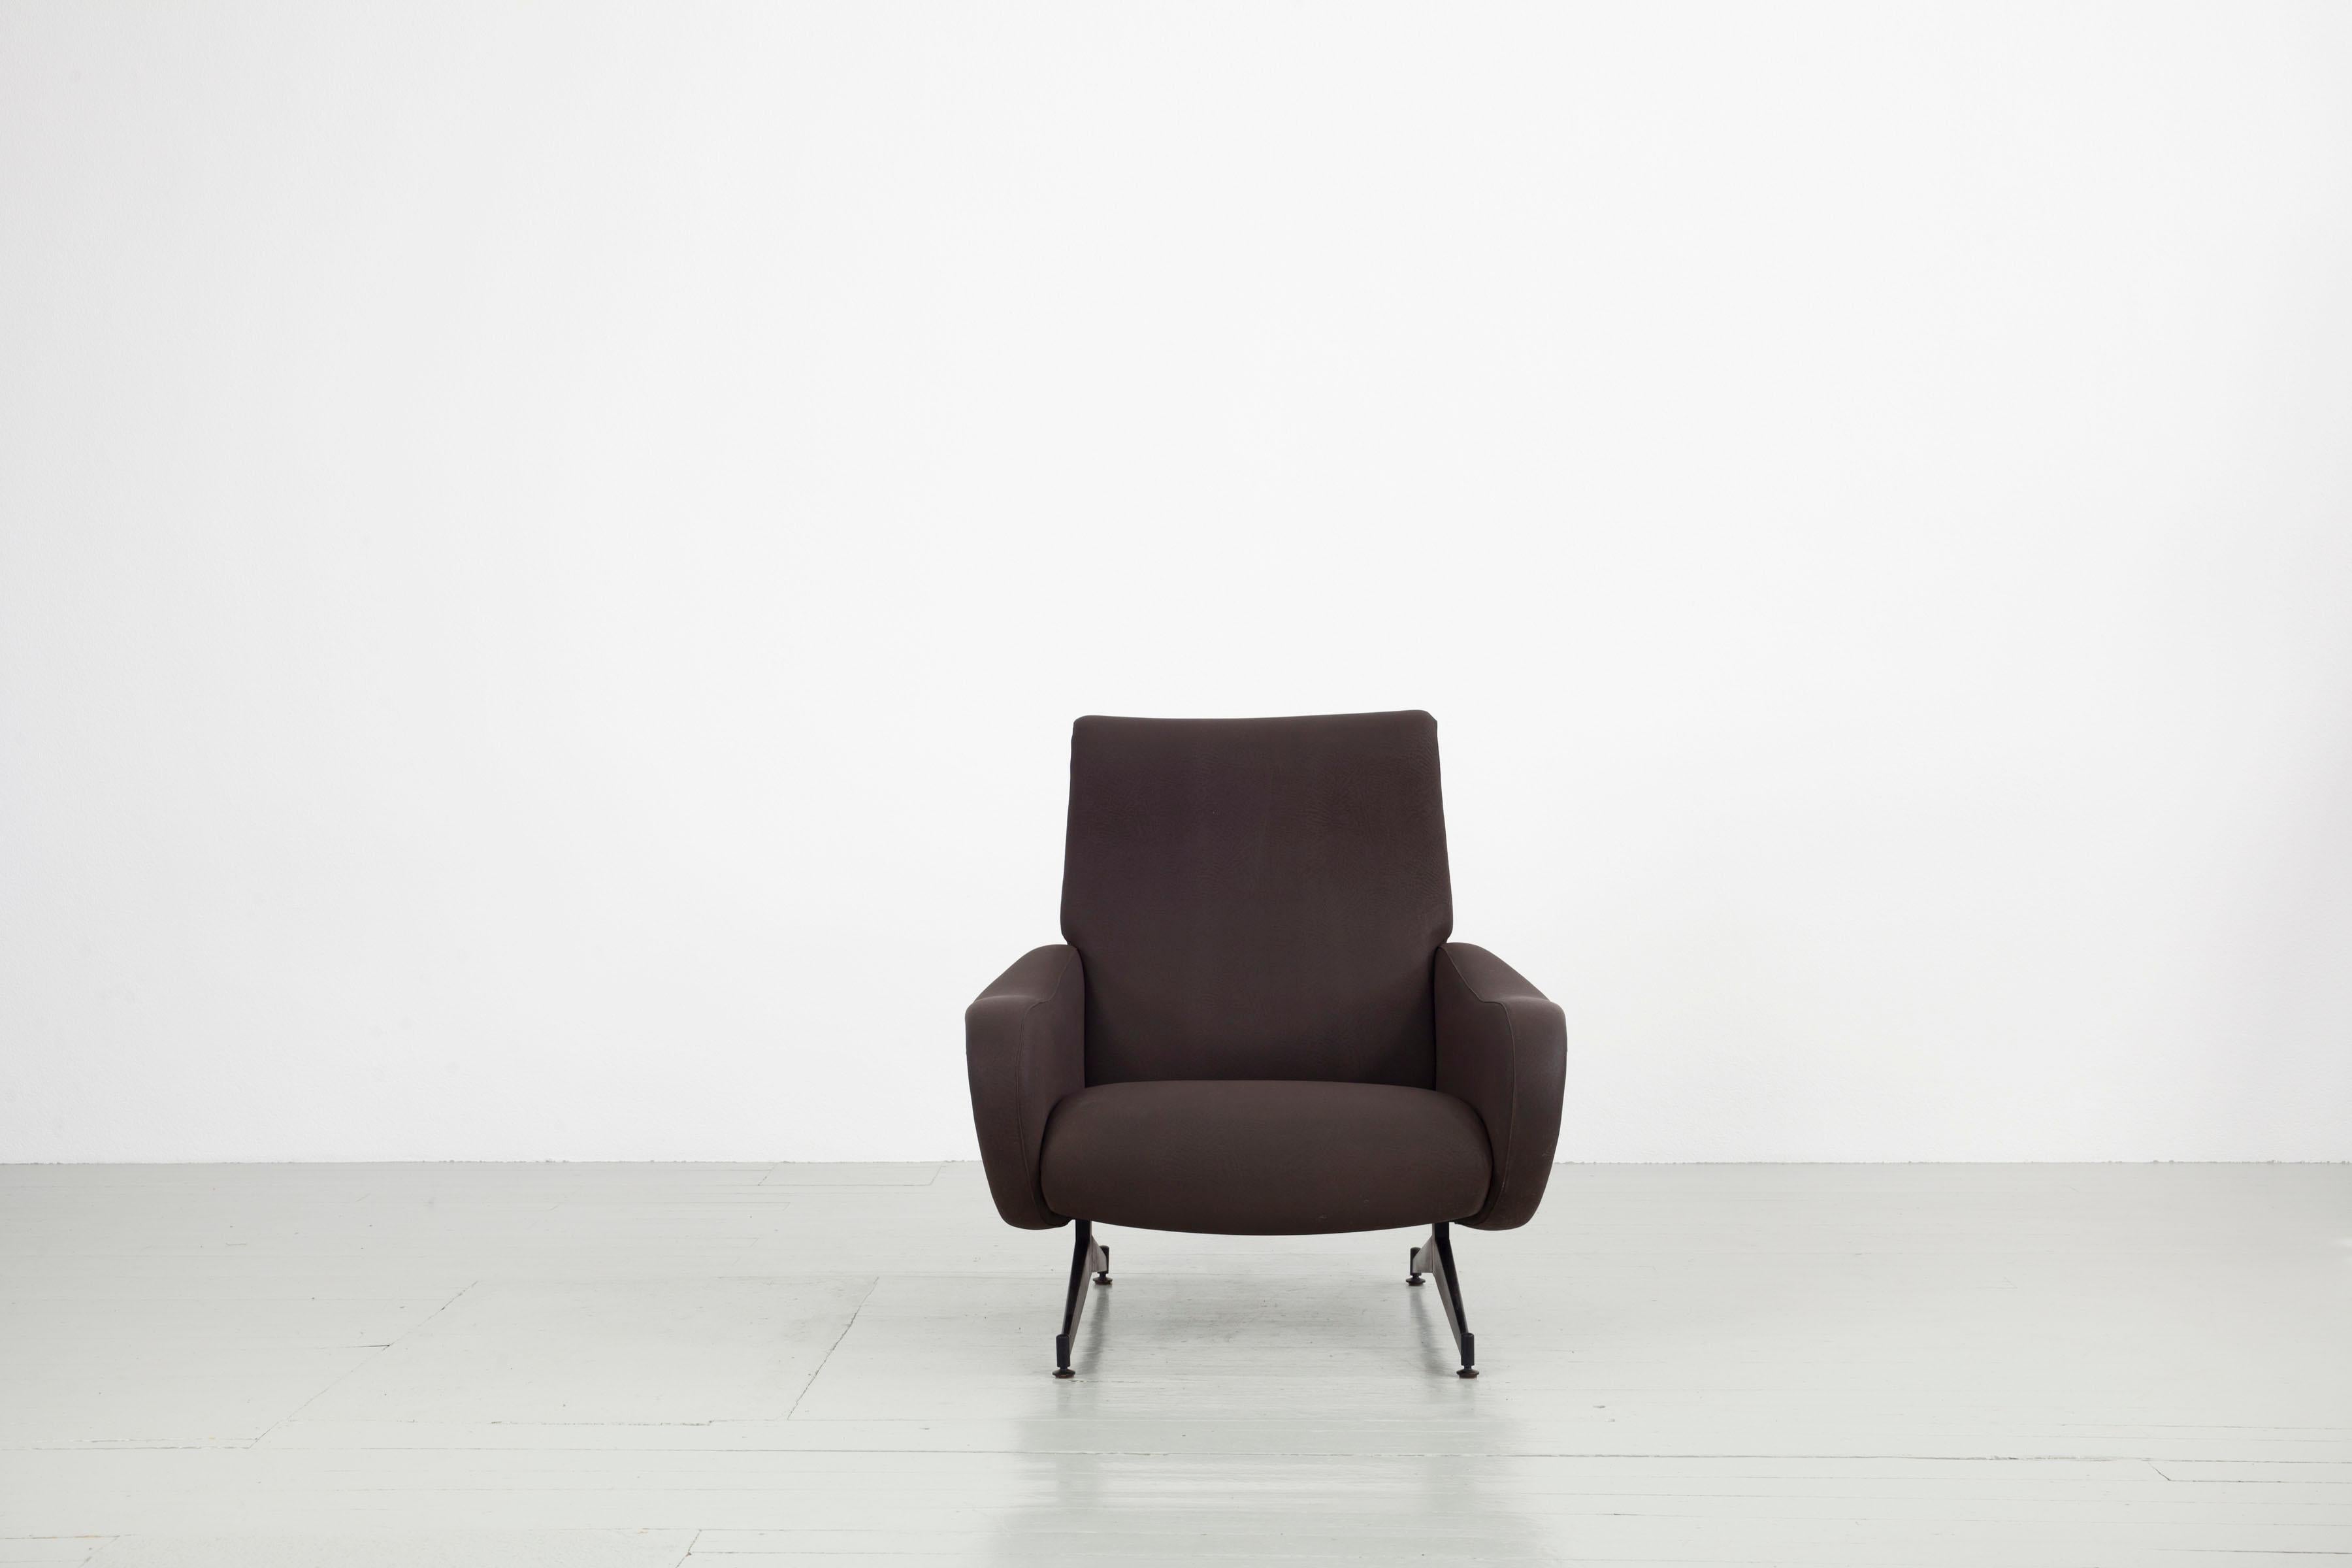 Sessel - Italien, 1950er Jahre. Dieses Stück ist baugleich mit dem Stuhl Lady, einem Entwurf von Marco Zanuso, nur die Basis des Stuhls ist anders. Die Sessel sind mit einem braunen Stoff gepolstert und befinden sich im Originalzustand.